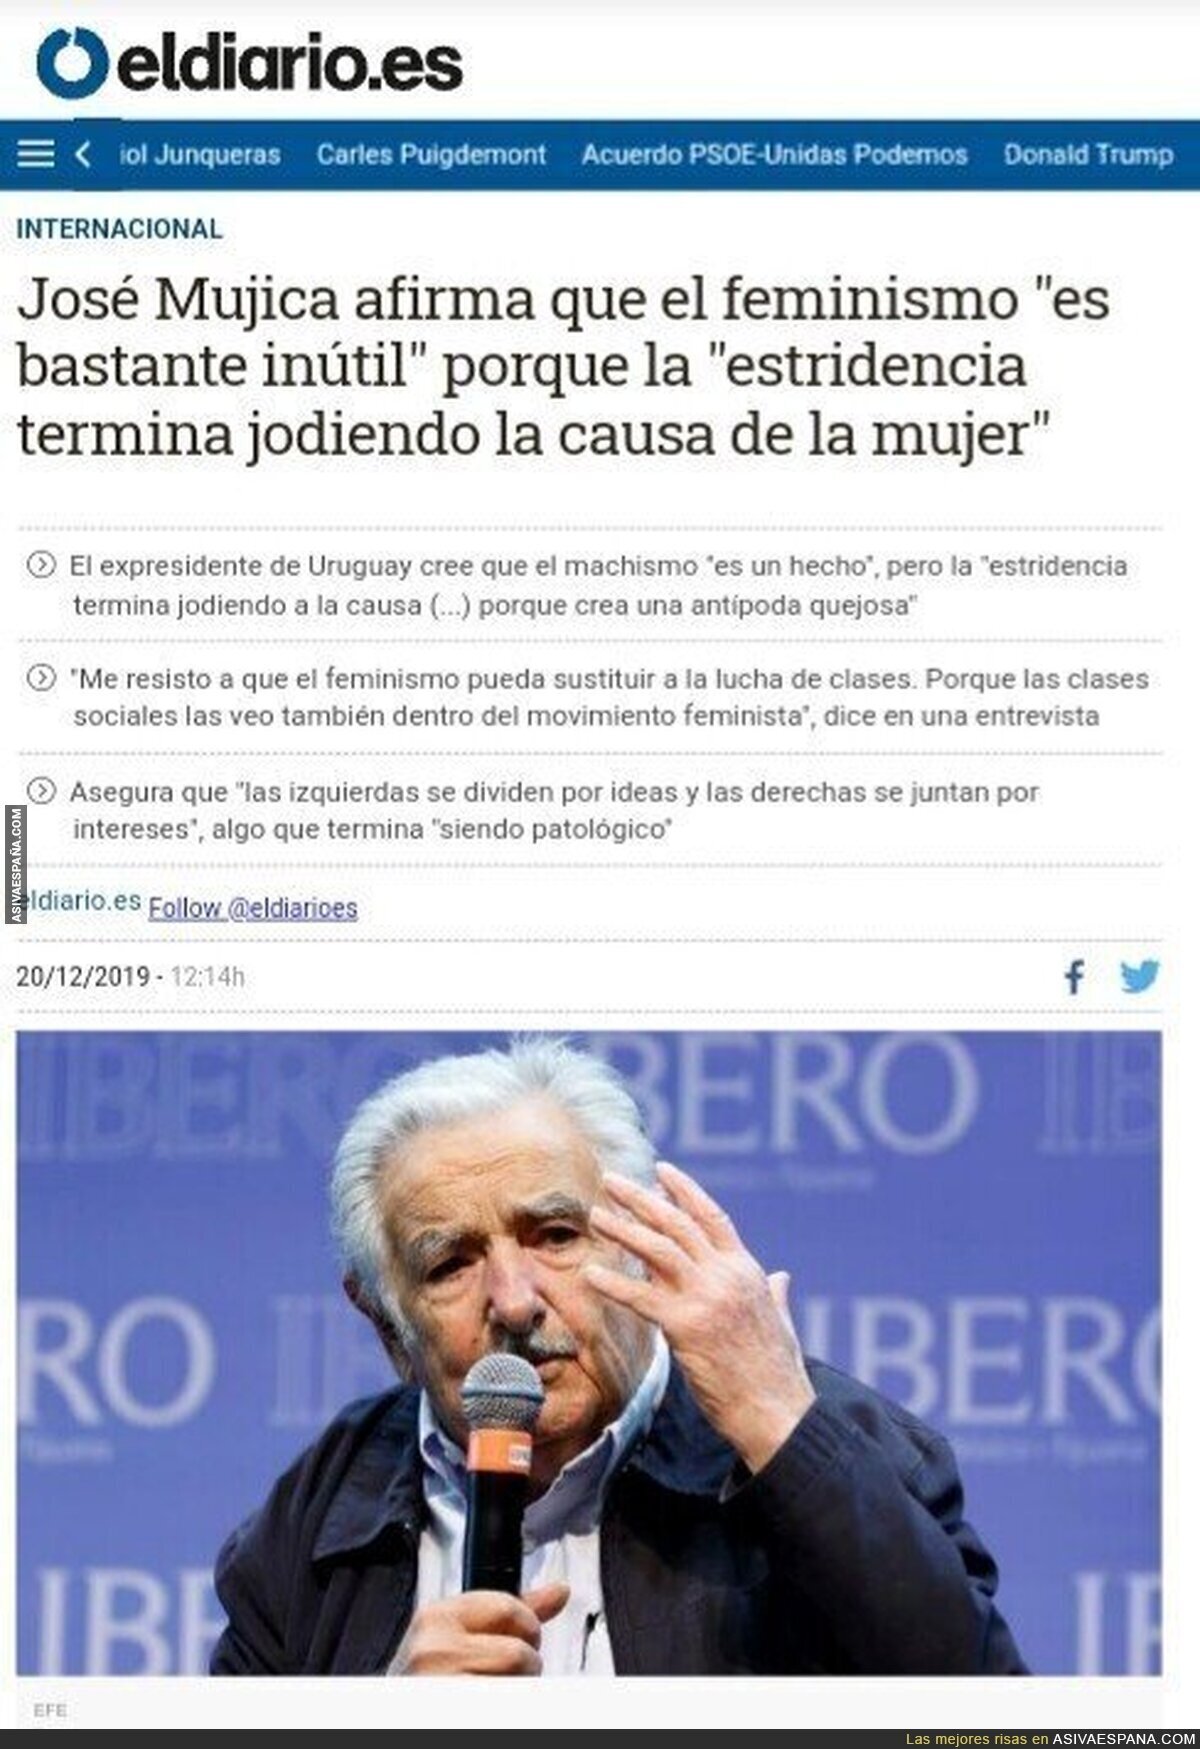 José Mujica, nuevo "machista", pide el voto para VOX